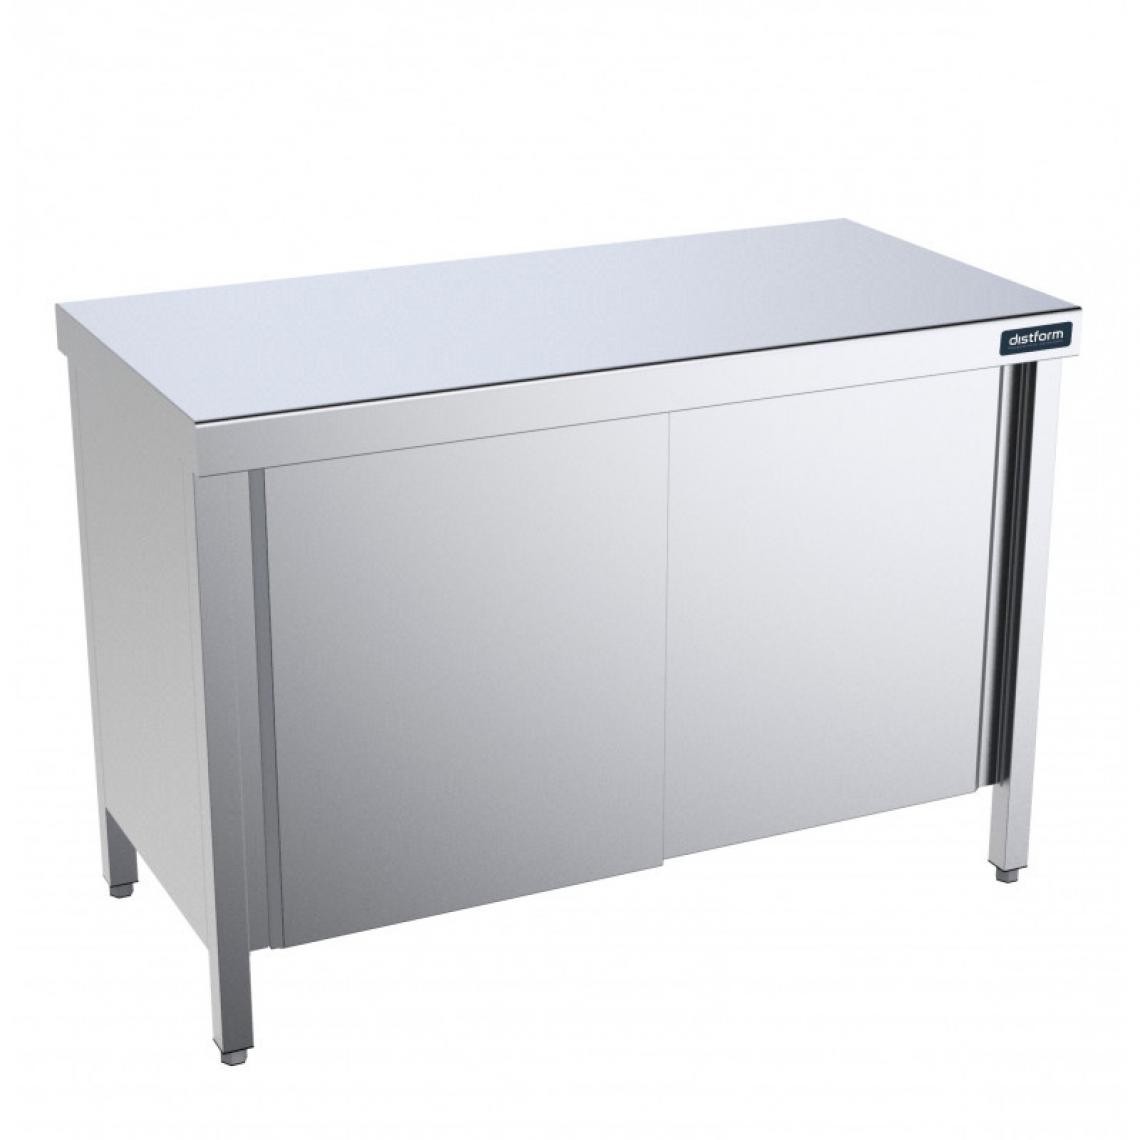 DISTFORM - Table en Inox Gamme 900 avec Portes et Etagères - Distform - Acier inoxydable1600x900 - Tables à manger